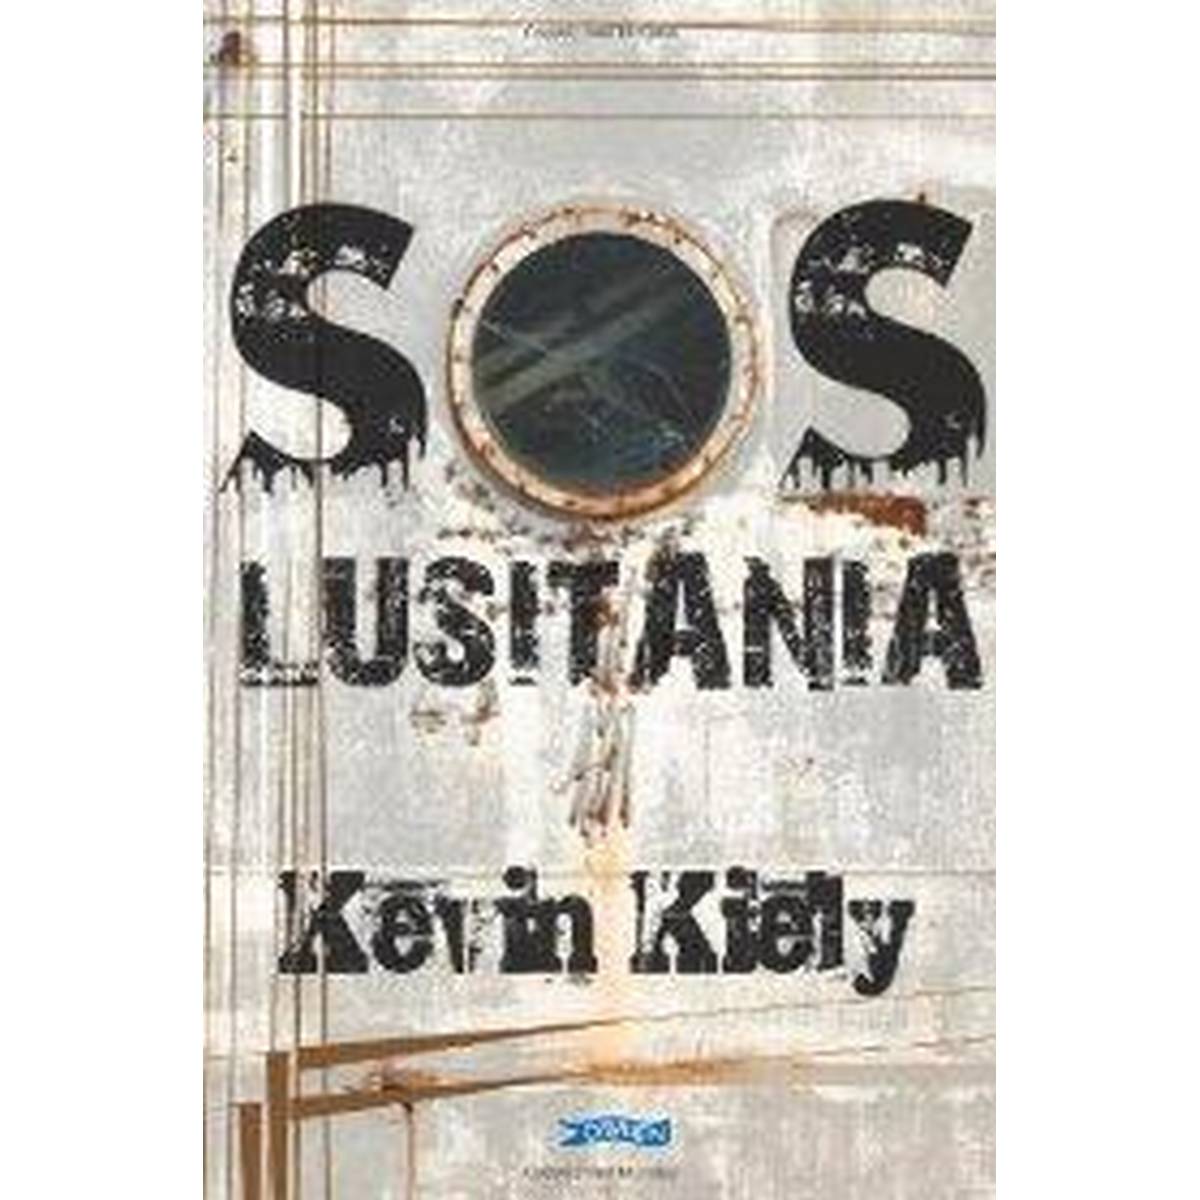 SOS Lusitania